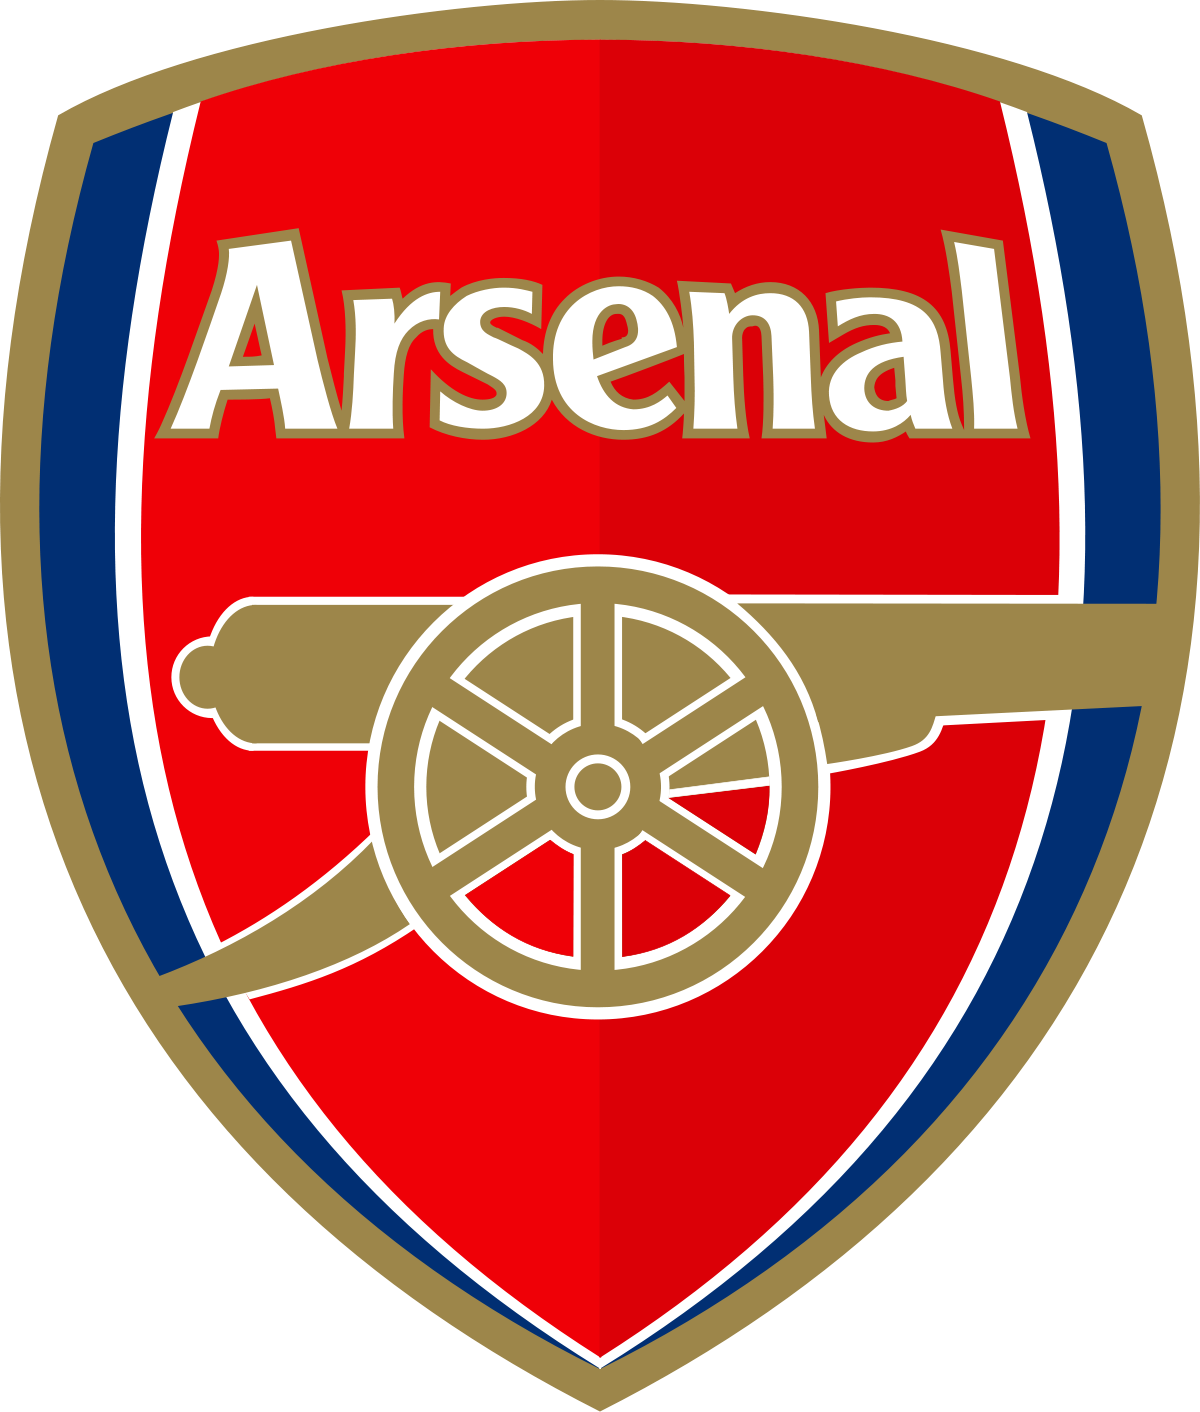 Logo ủi áo quần clb bóng đá Mu - Chelsea - Arsenal - Barca - Real ...